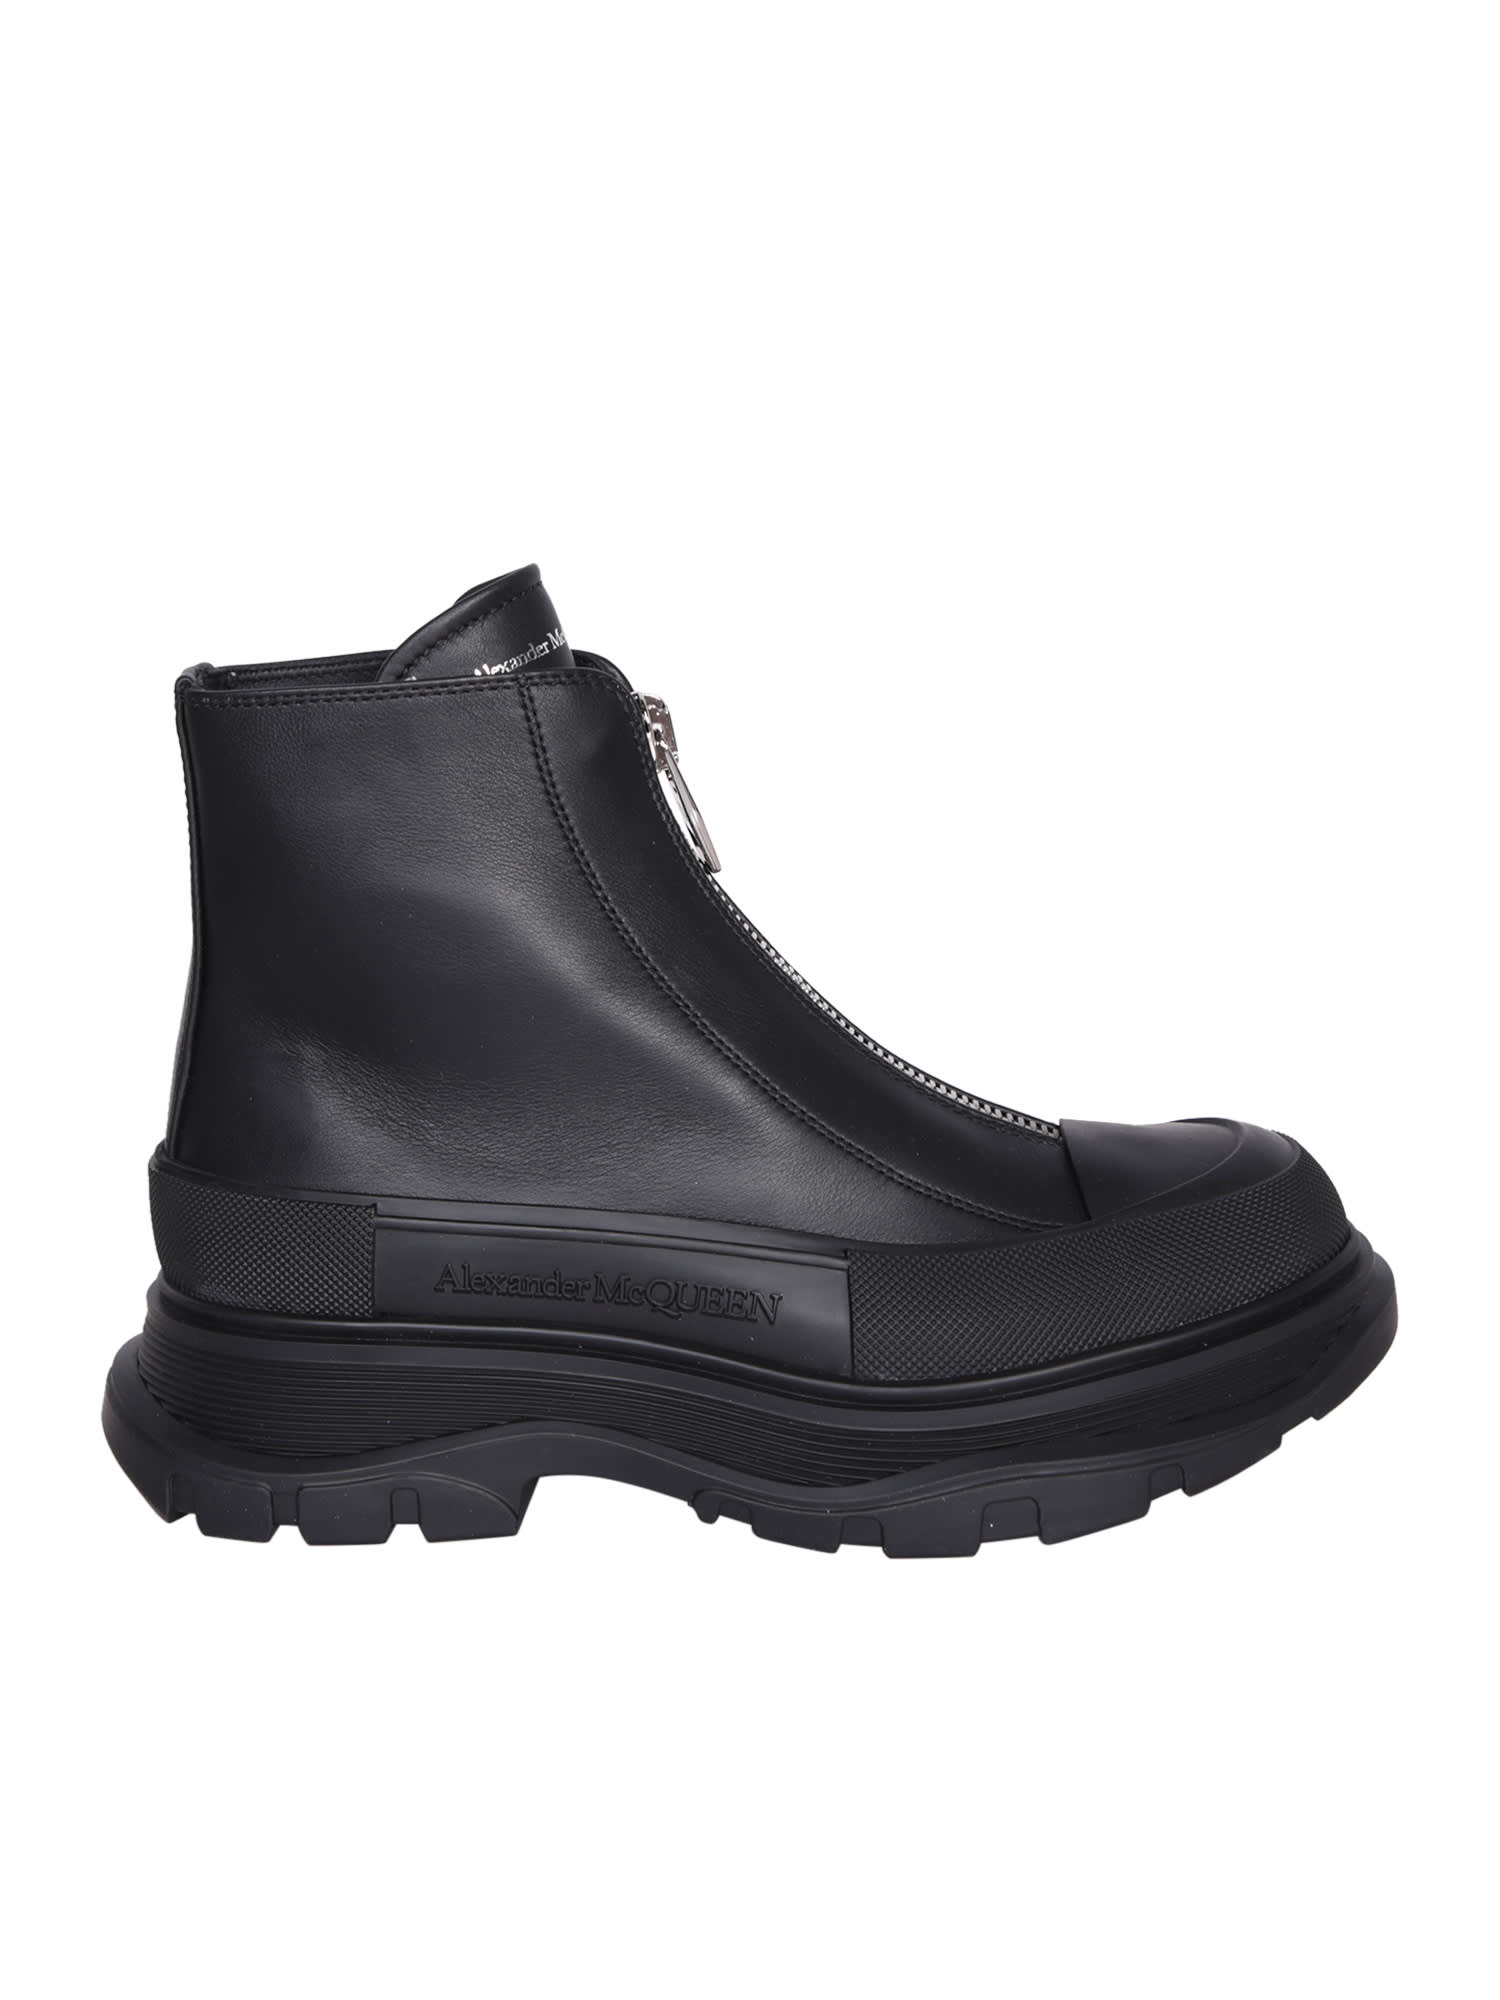 Alexander Mcqueen Tread Slick Boots In Black